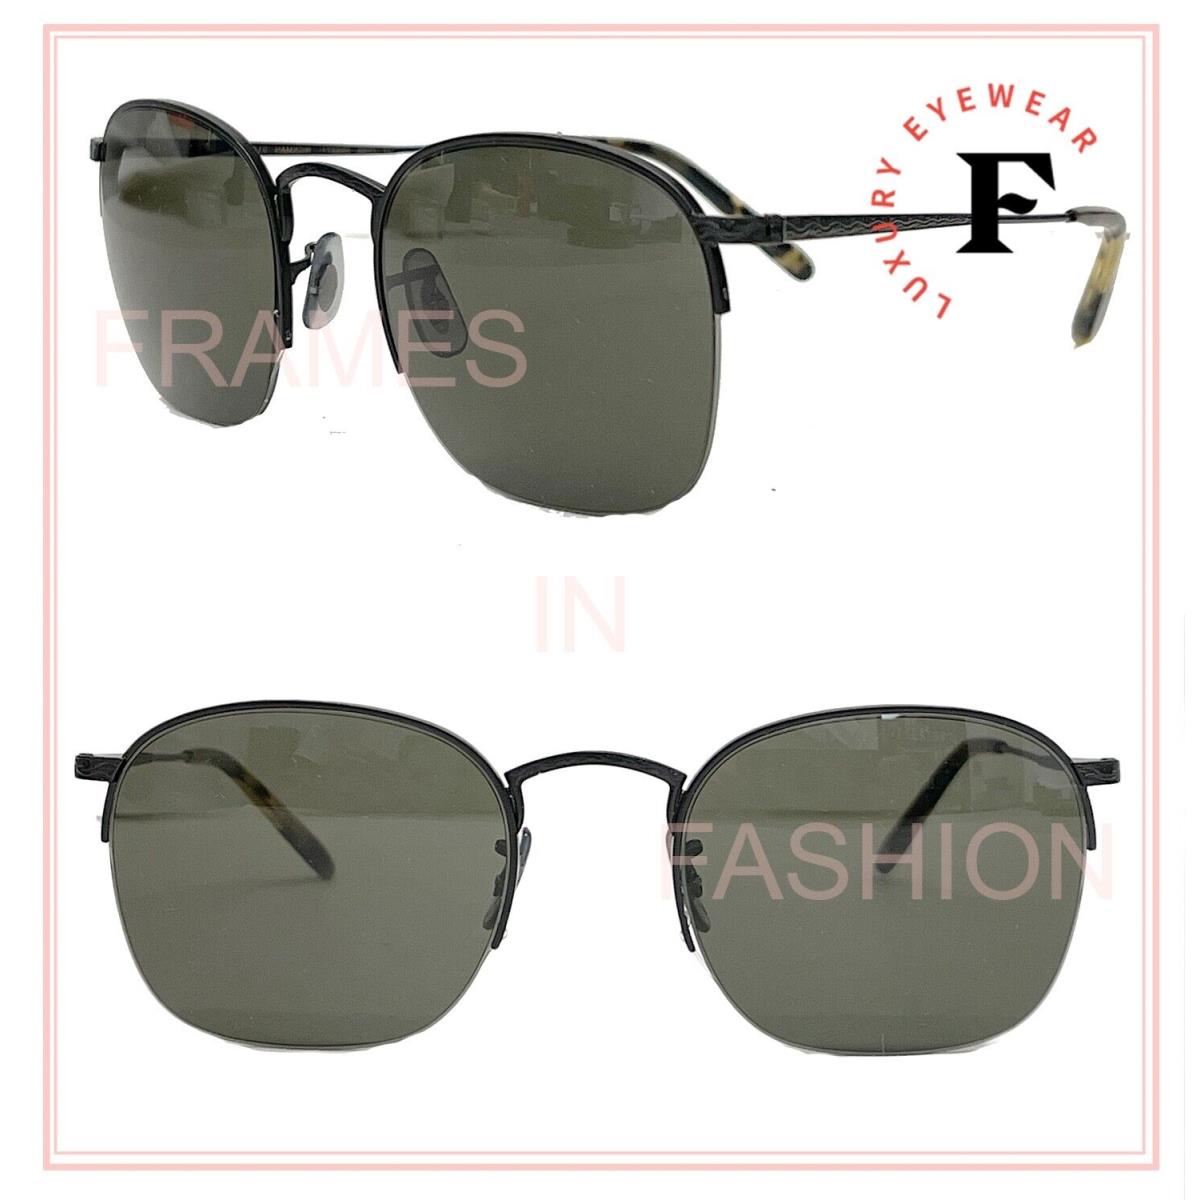 Oliver Peoples Rickman OV1209S 51mm Matte Black G15 Unisex Metal Sunglasses 1209 - 5062/71 , Black Frame, Gray Lens